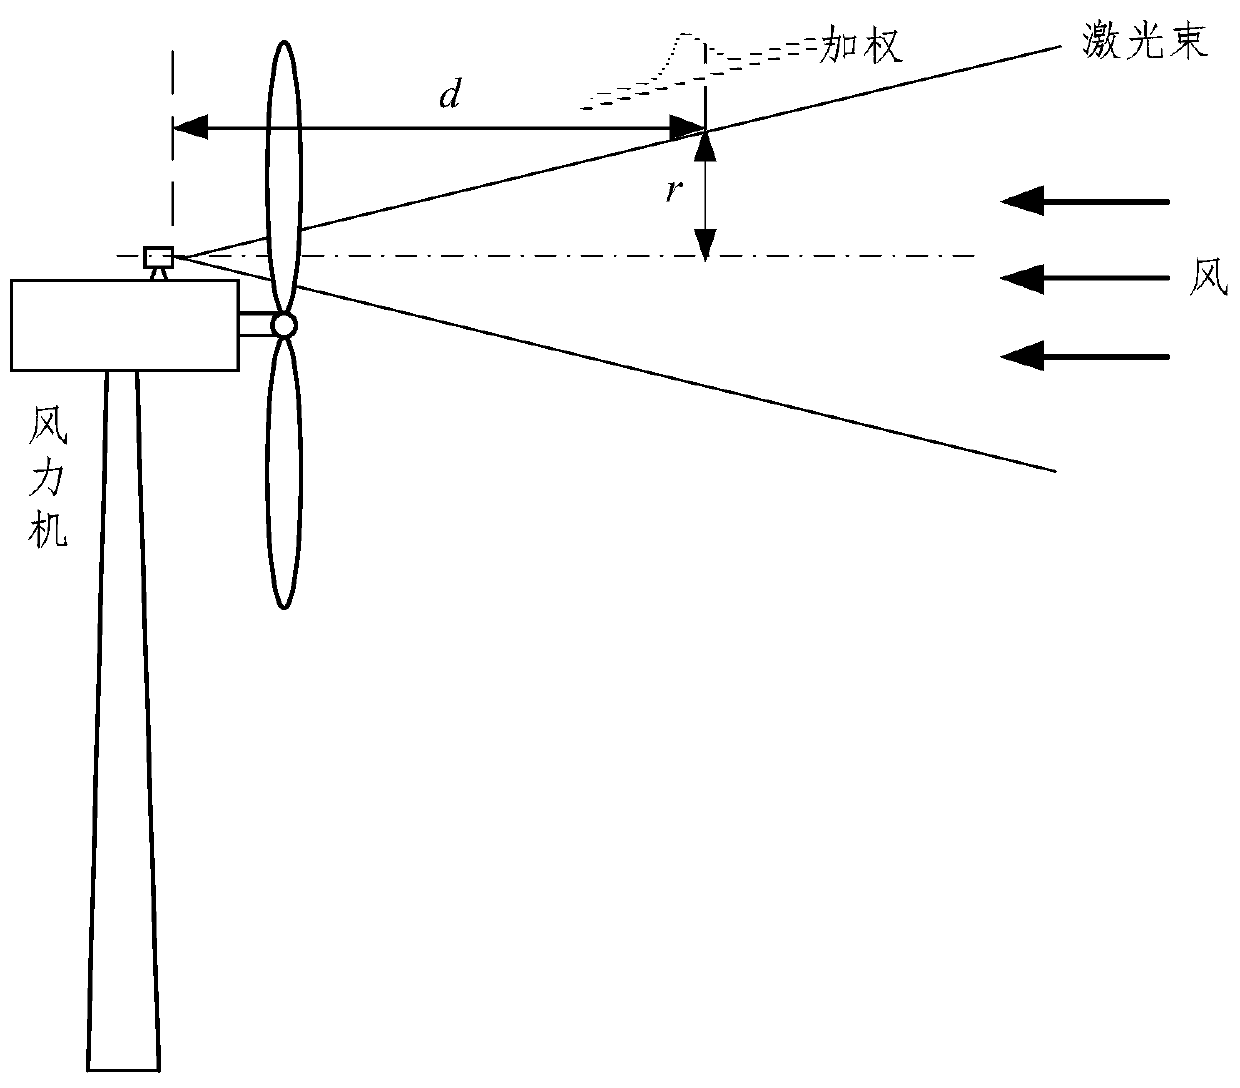 Wind turbine yaw control method